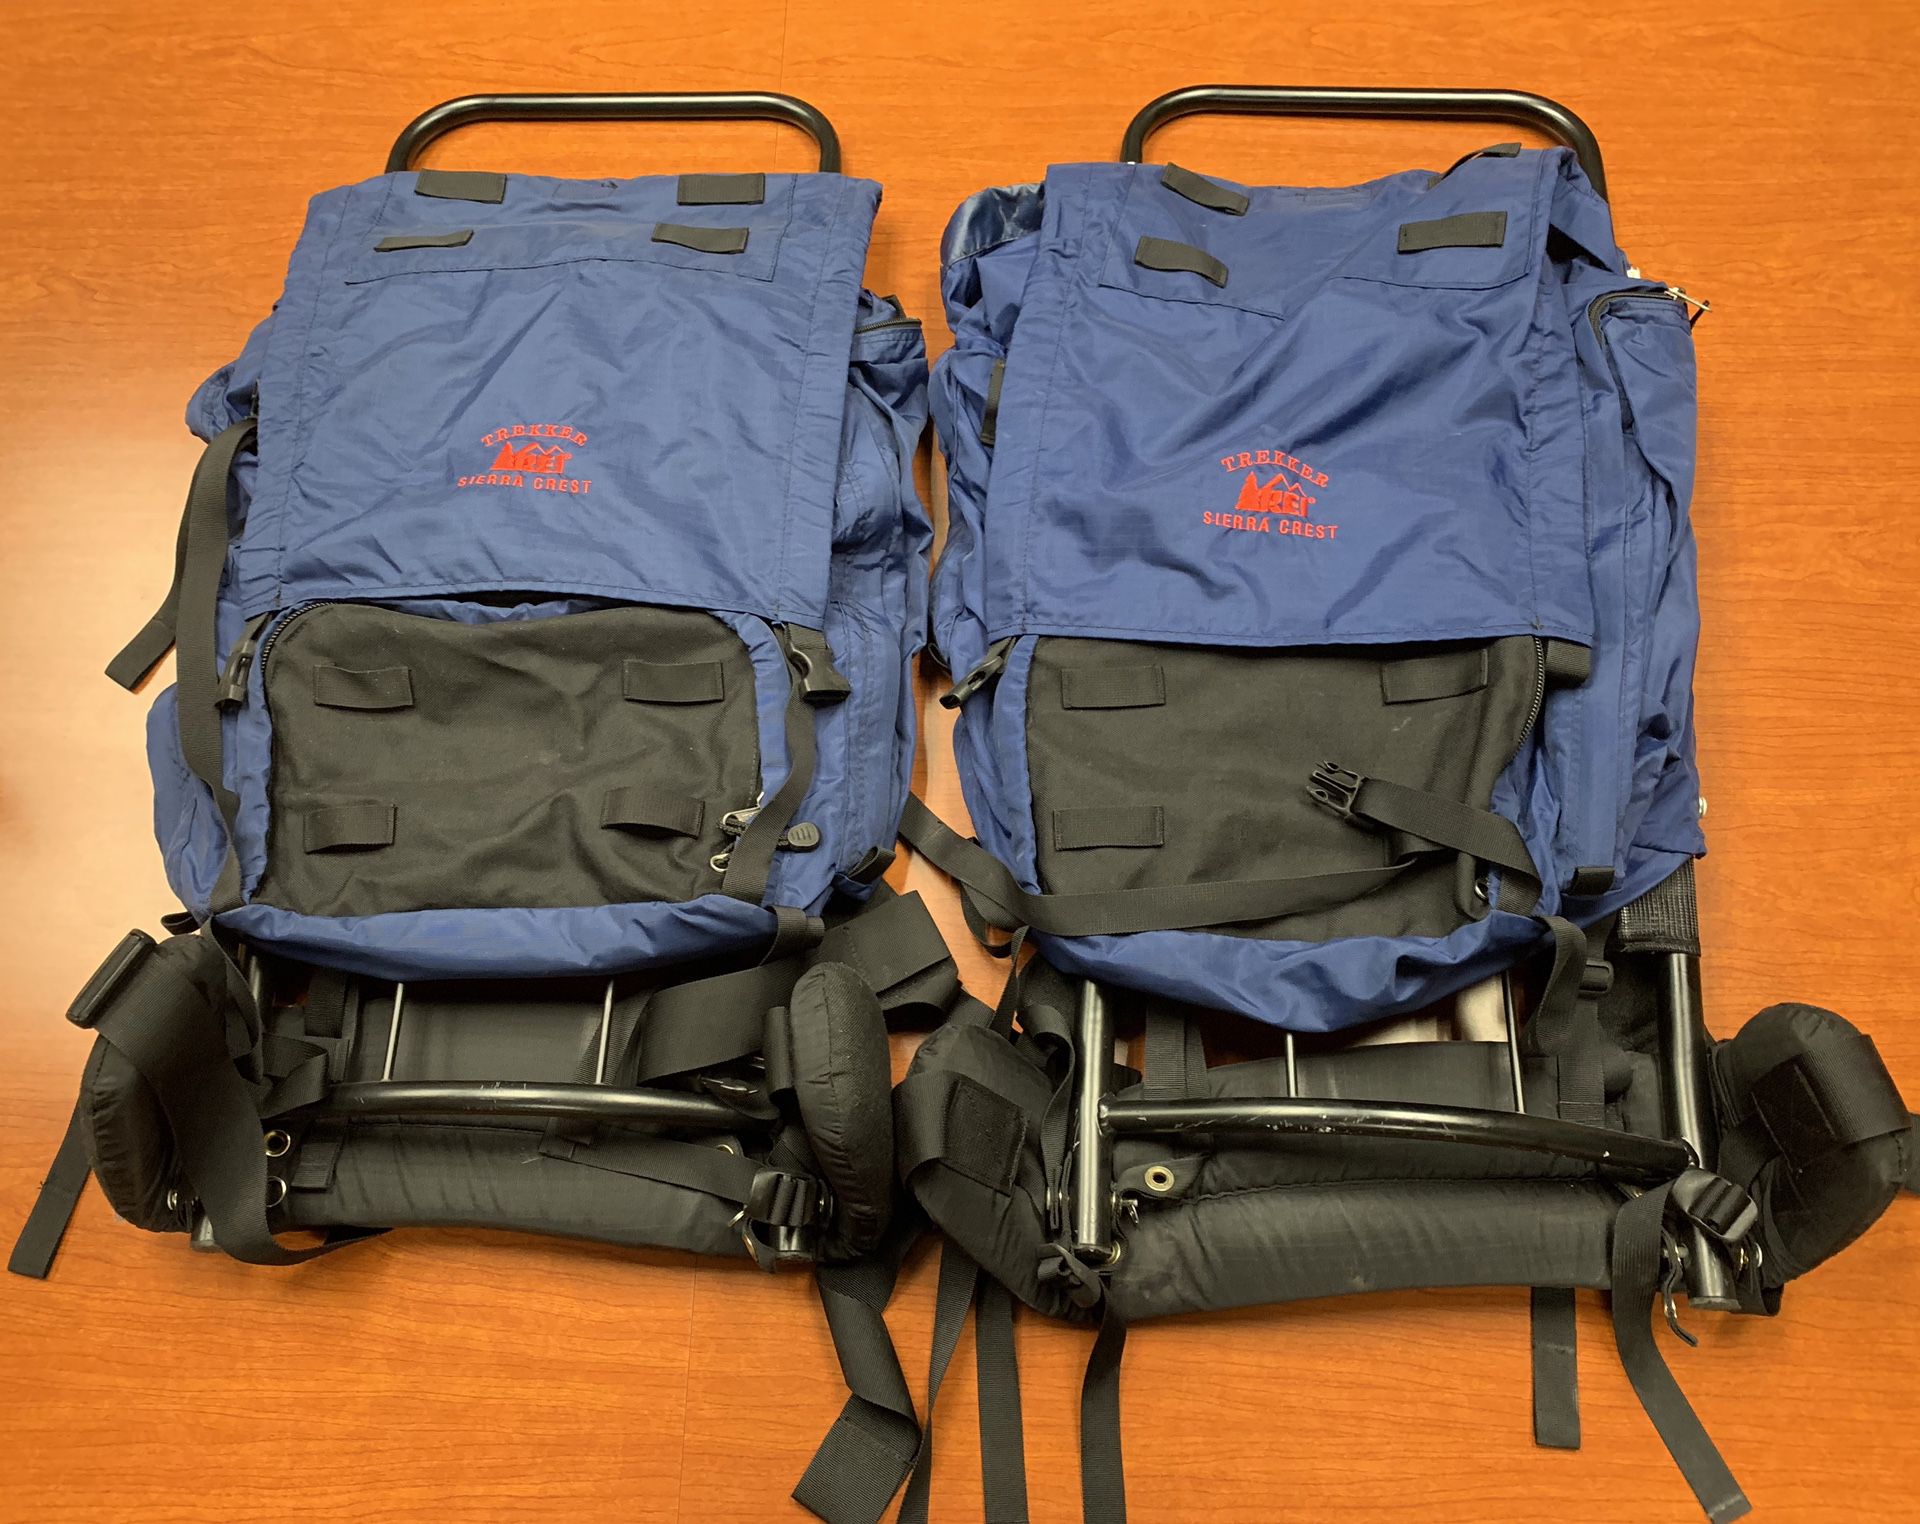 2 REI Trekker Sierra Crest External Frame Hiking Or Camping Backpacks $55 OBO